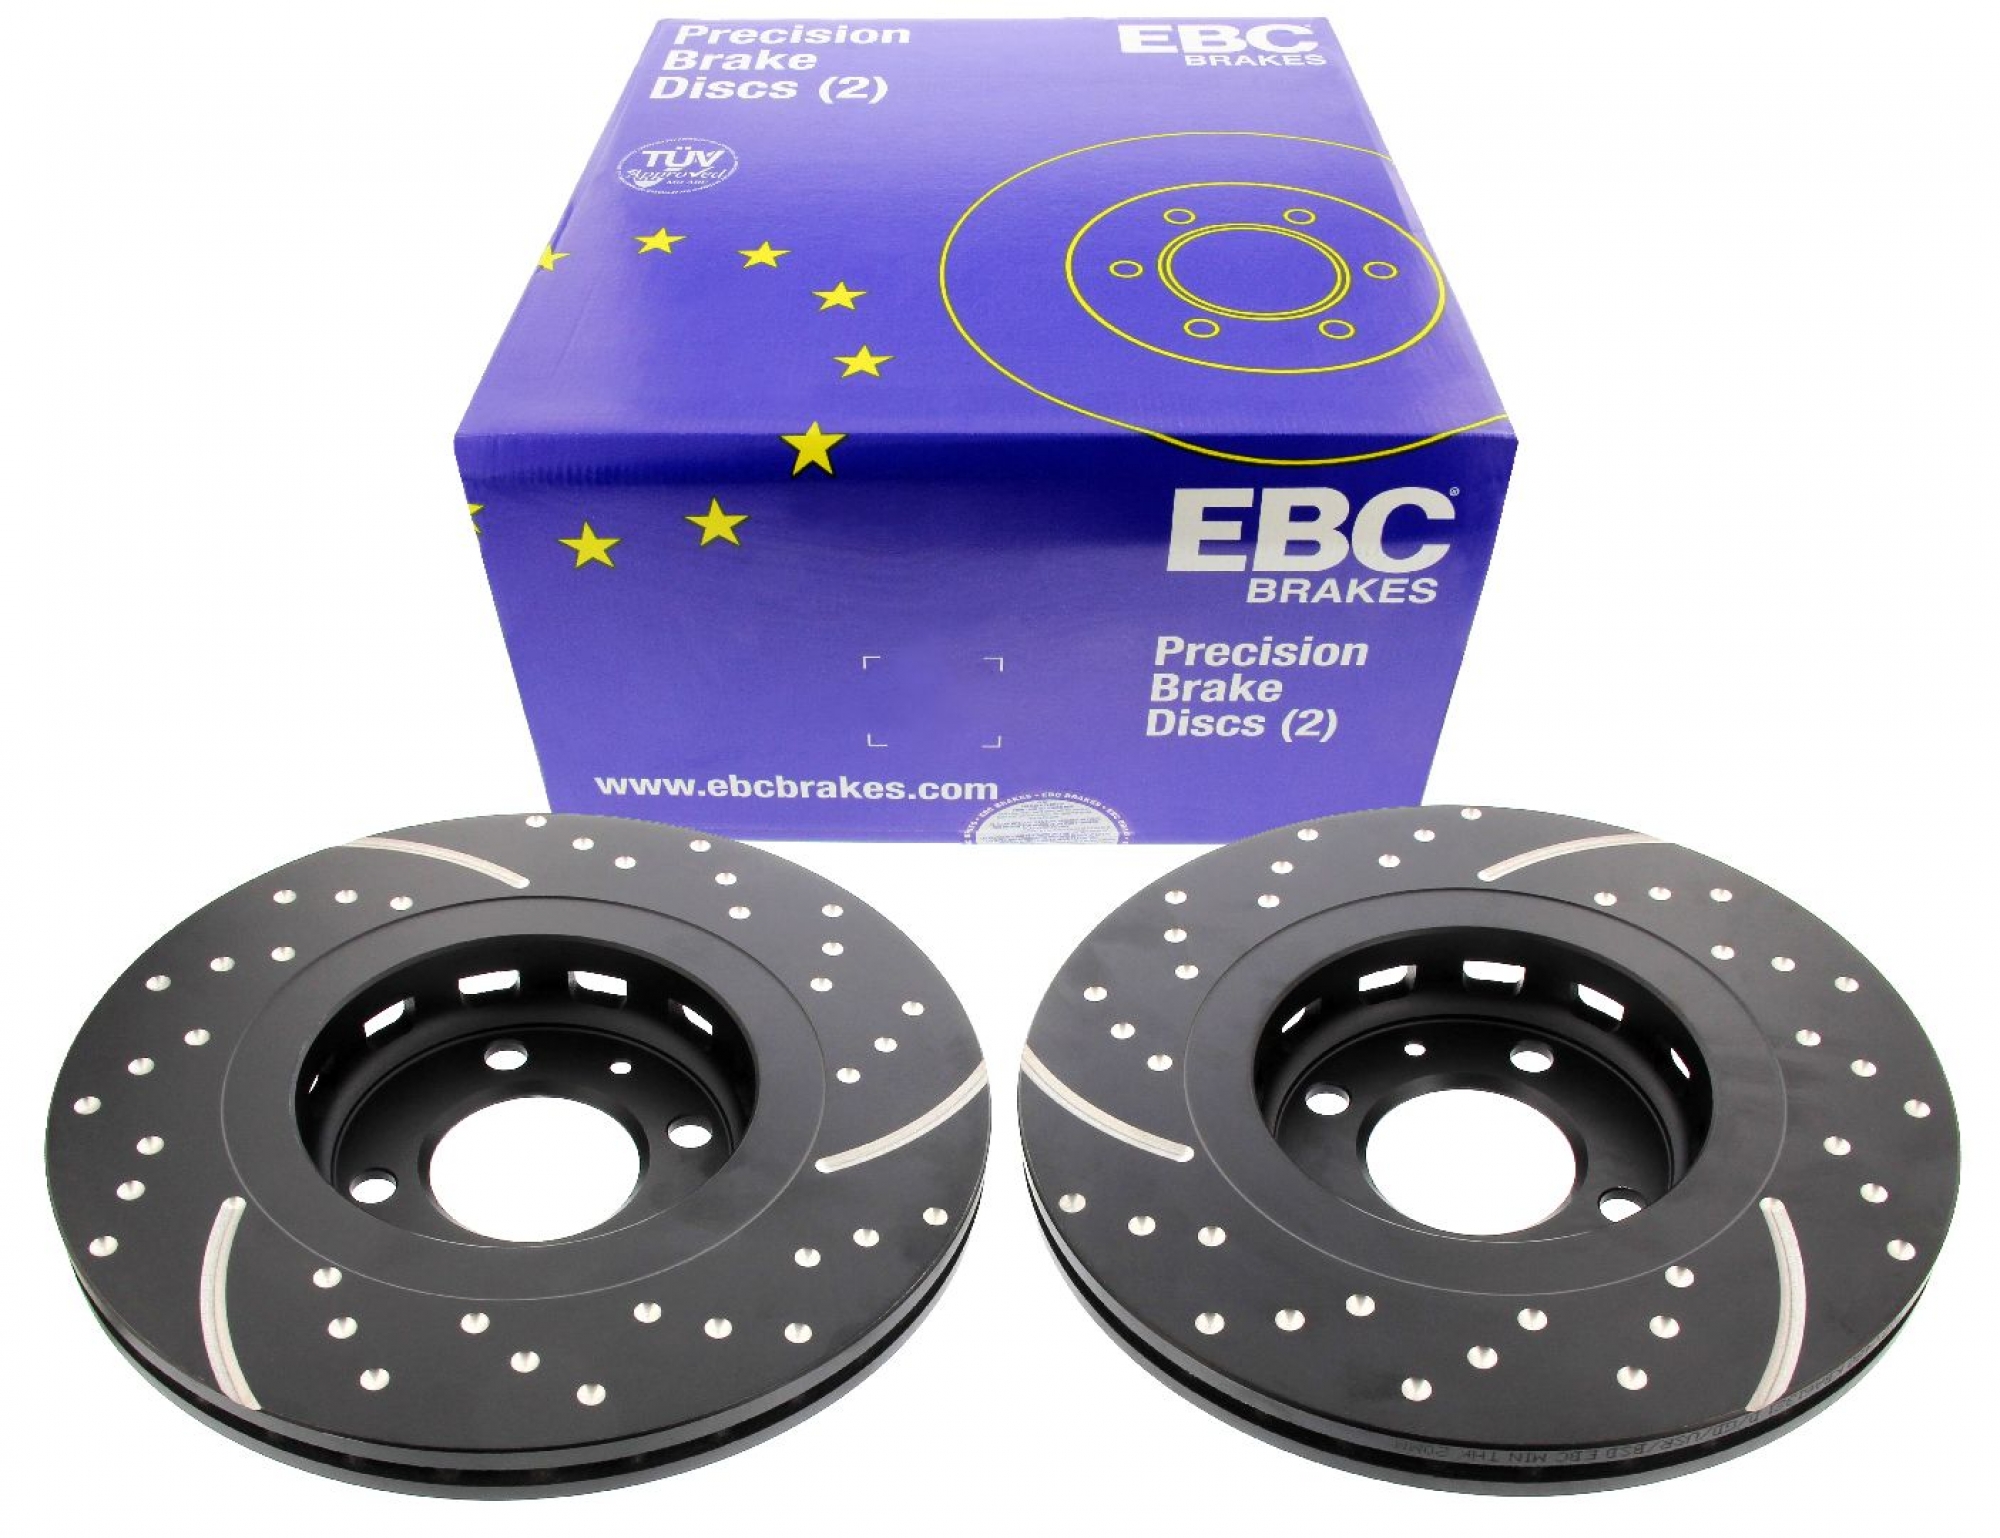 EBC-Bremsscheiben, Black Dash Disc (2-teilig), VA, VW Golf 2/3, Corrado, G60-Bremse 280 mm